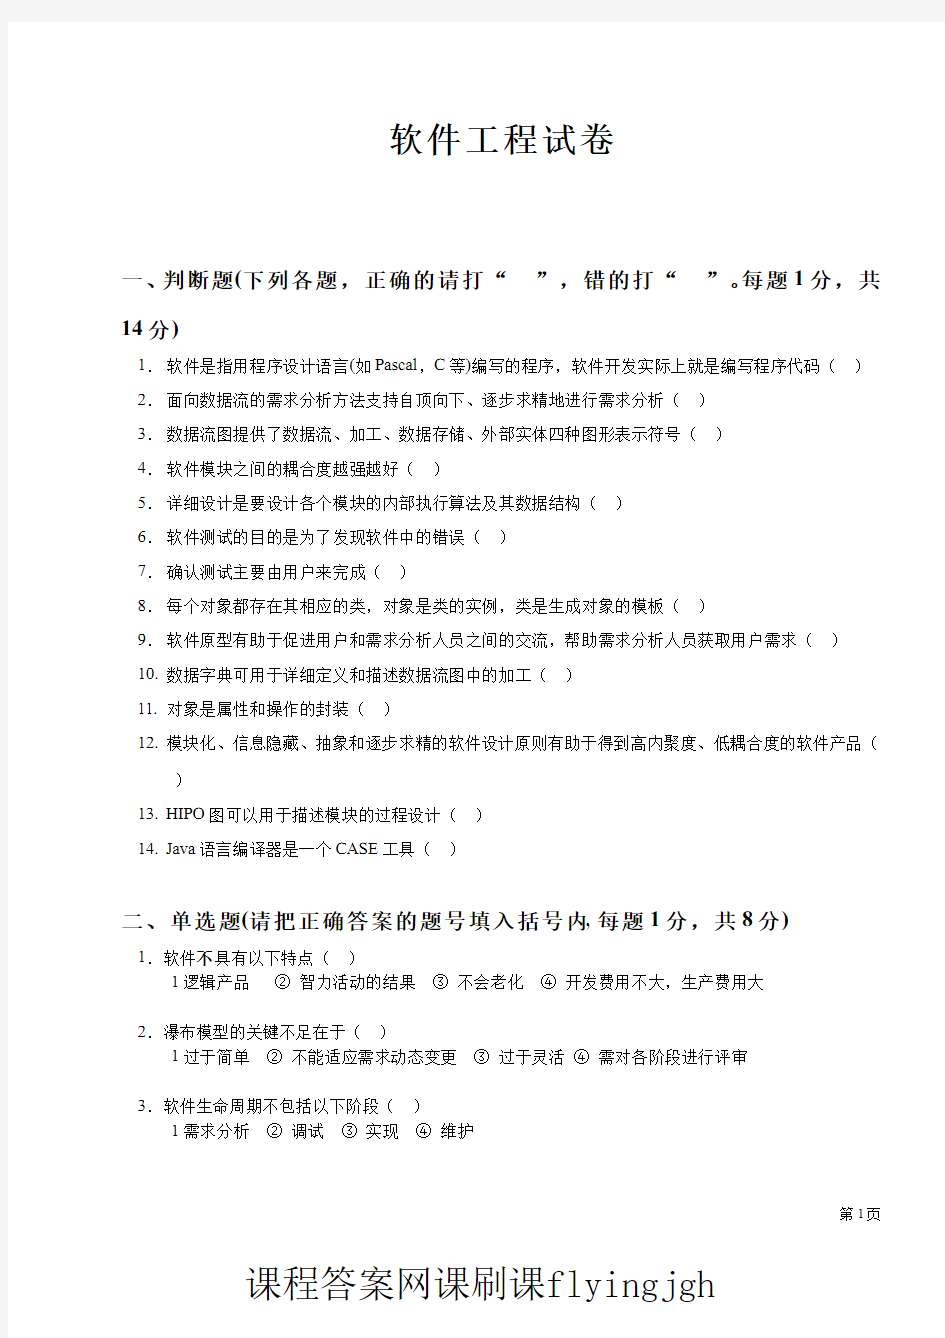 中国大学MOOC慕课爱课程(16)--试卷16网课刷课